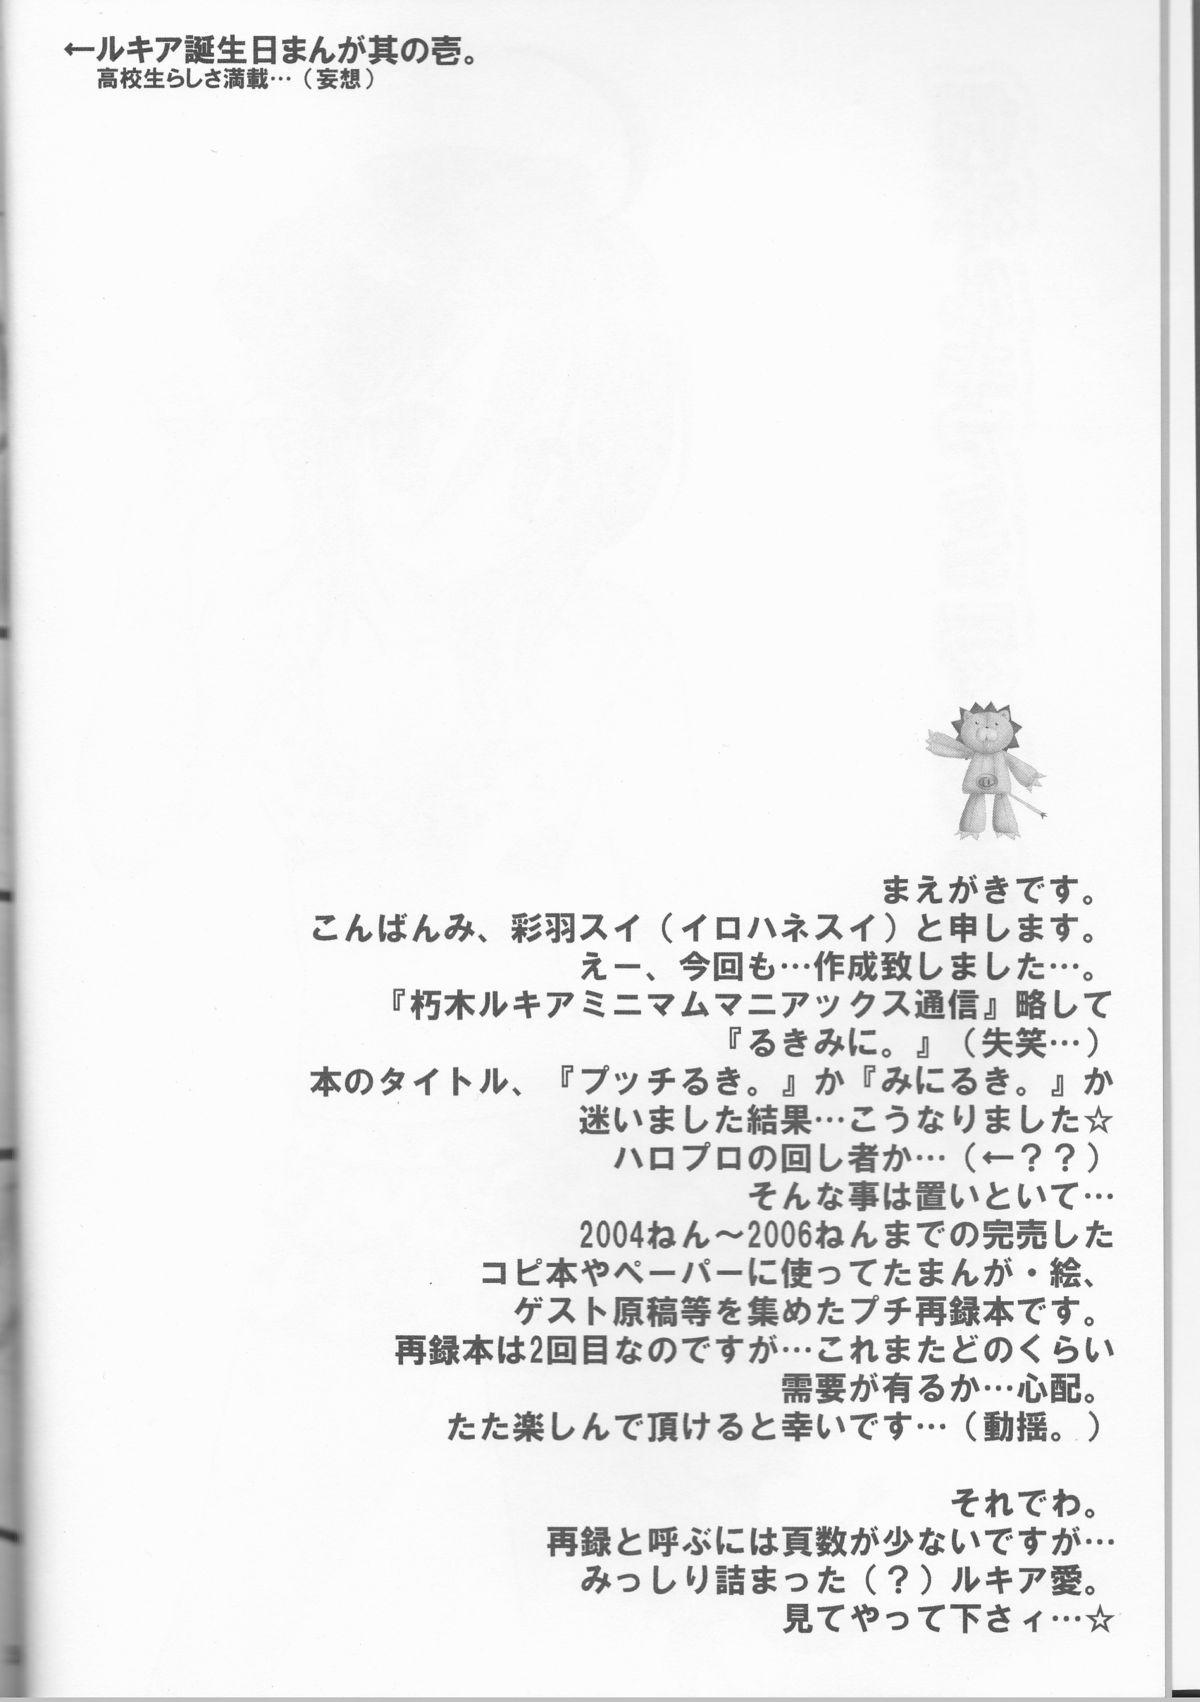 Bigdick Rukia Kuchiki Minimum Maniax File - Bleach Foot Job - Page 4